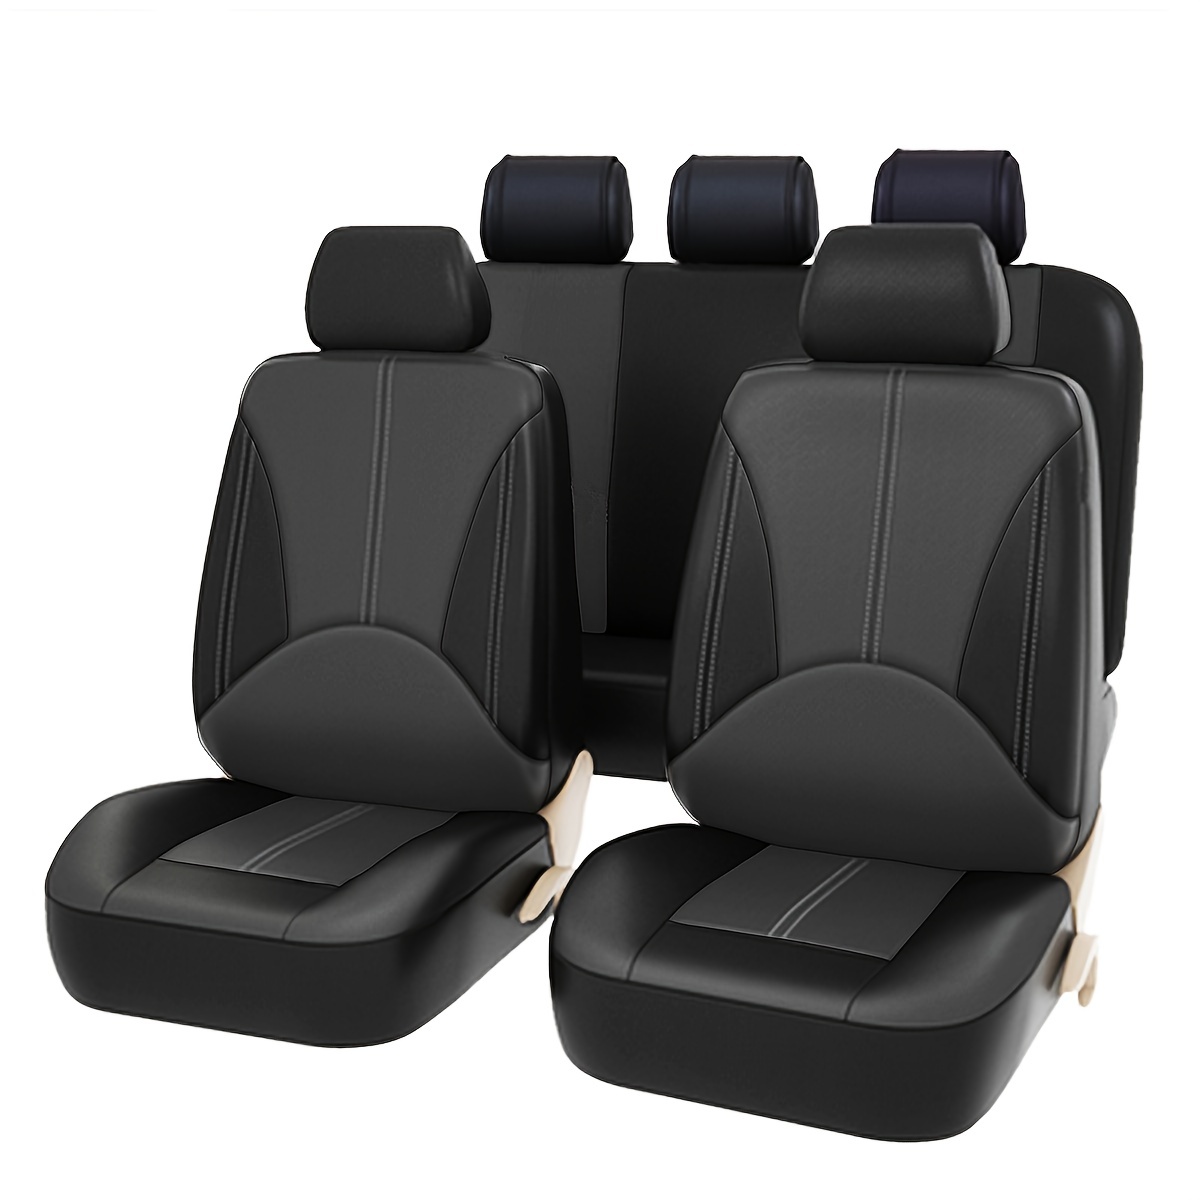  EDEALYN Funda protectora de cuero PU para un asiento de coche  para la mayoría de sedán y SUV de cuatro puertas, 1 funda sin respaldo,  ancho 20.8'' × profundidad 21'' ×